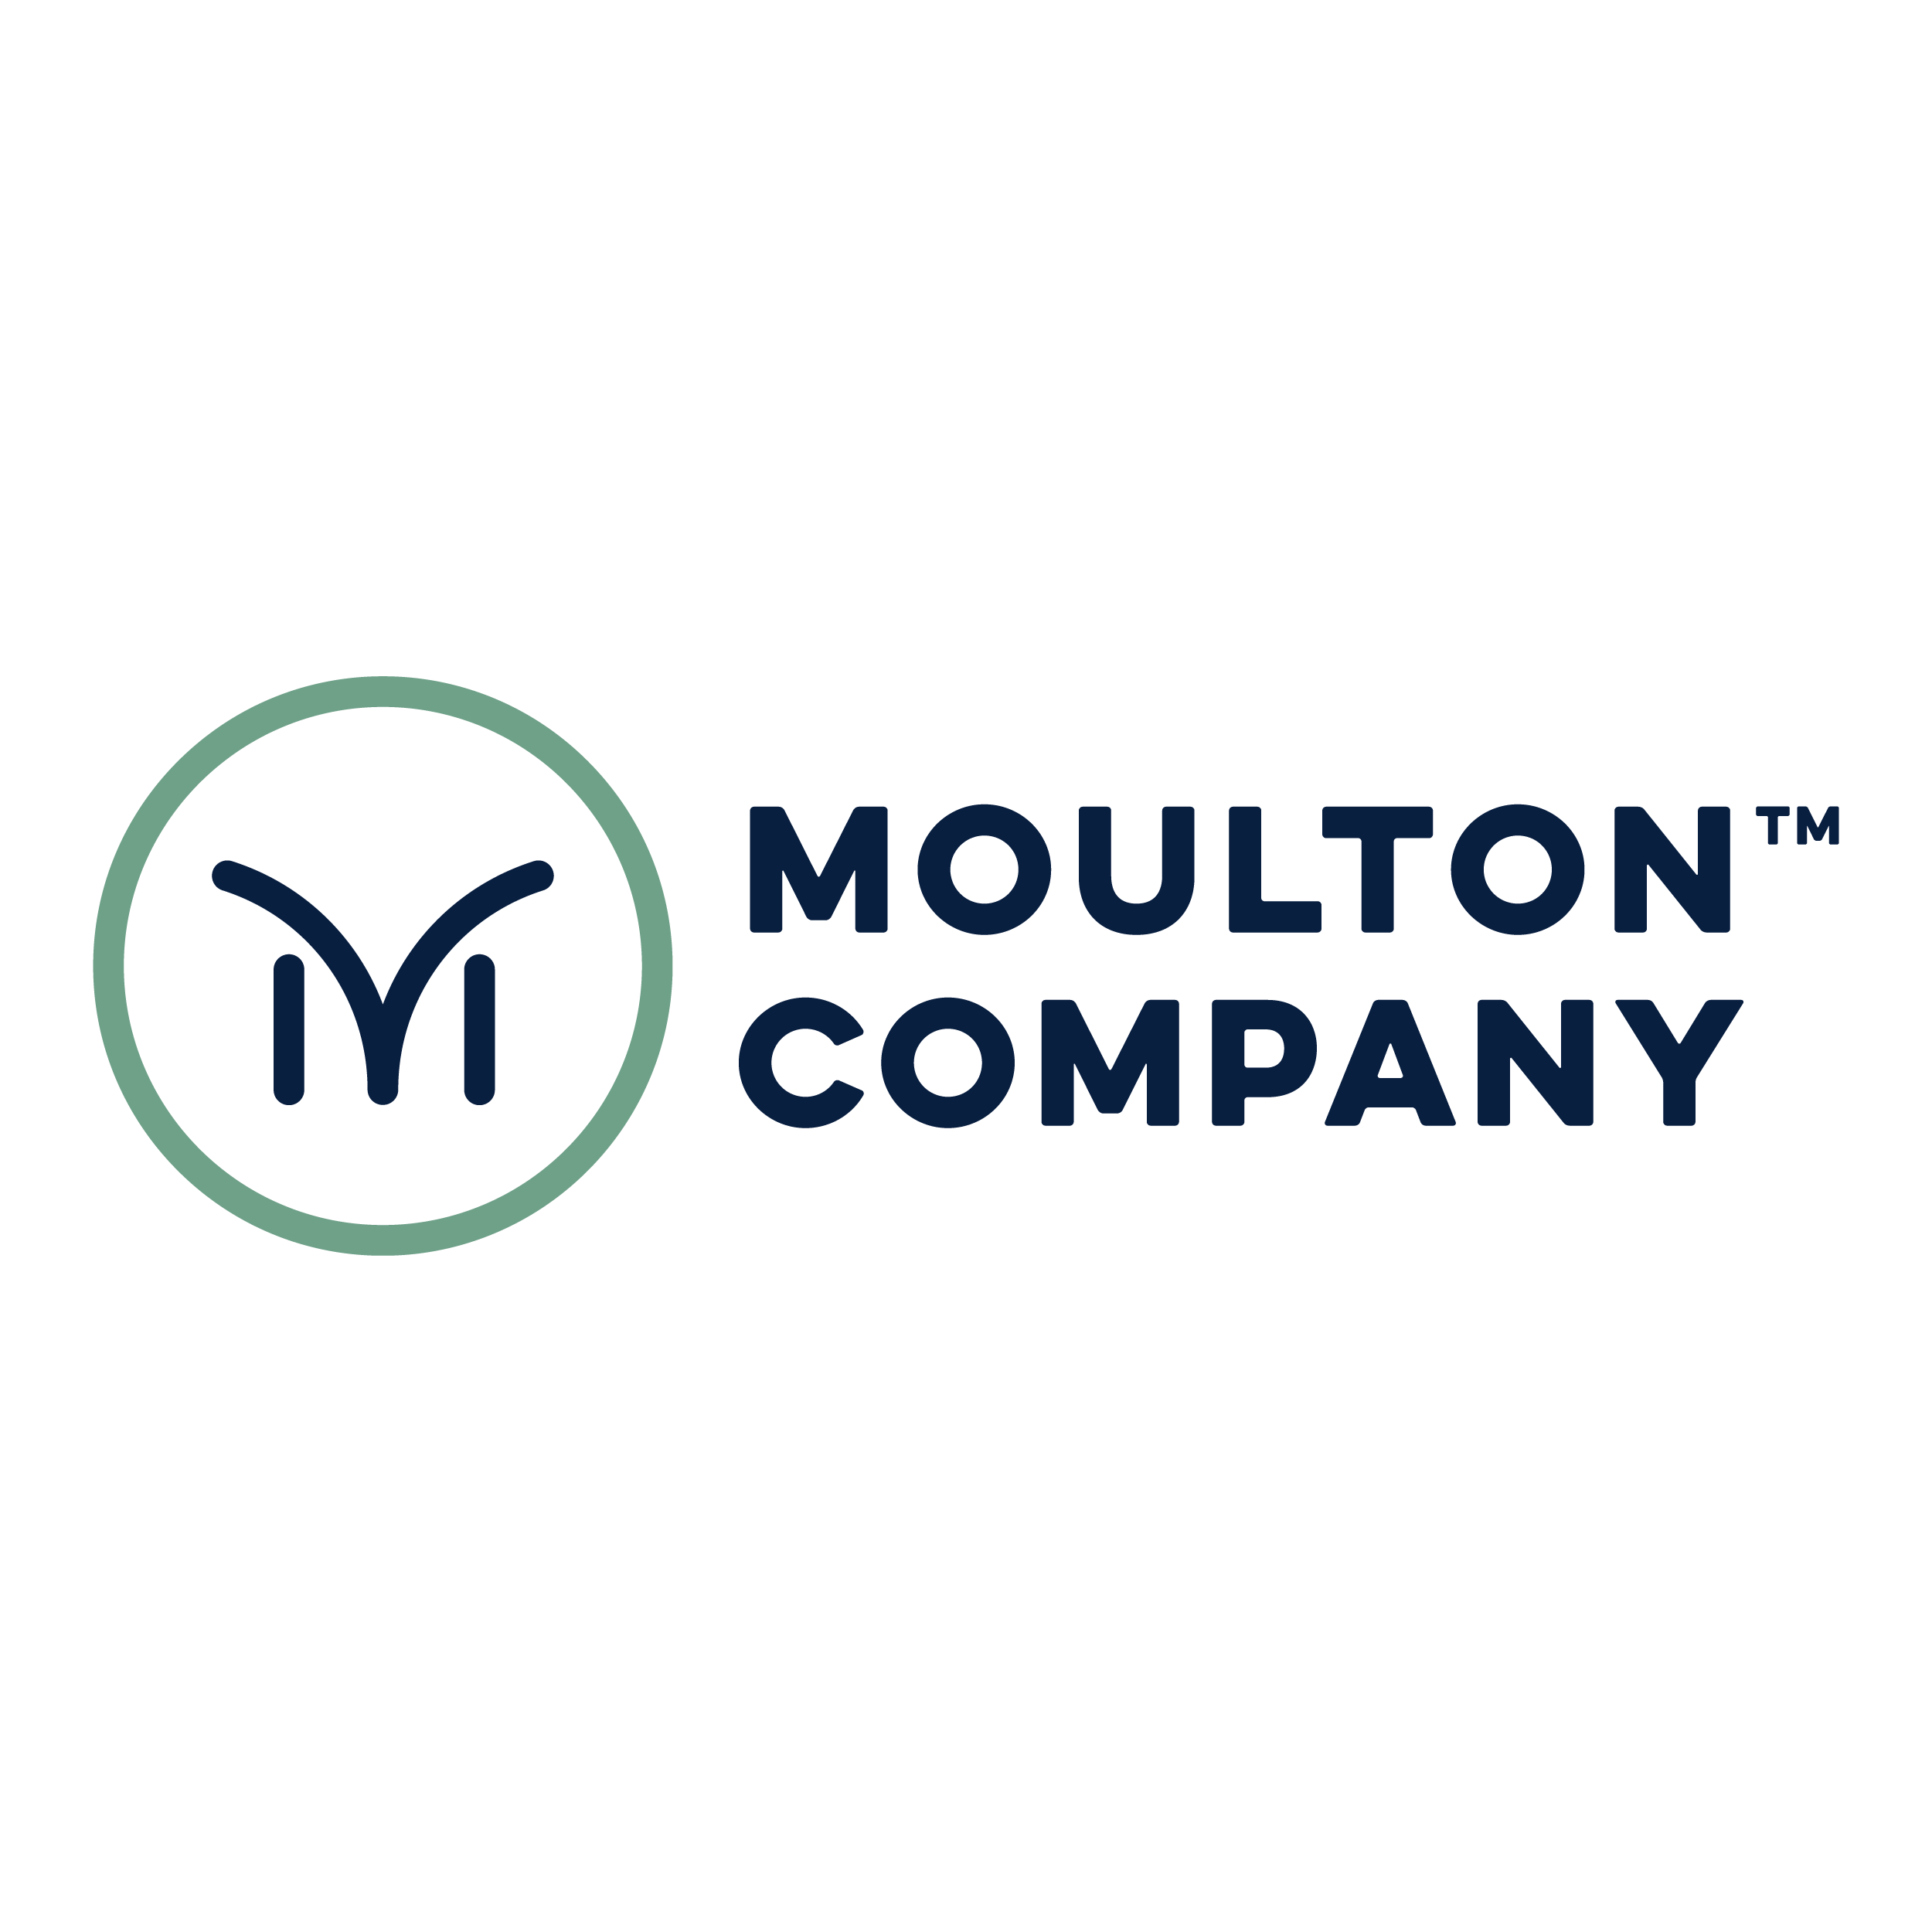 The Moulton Company